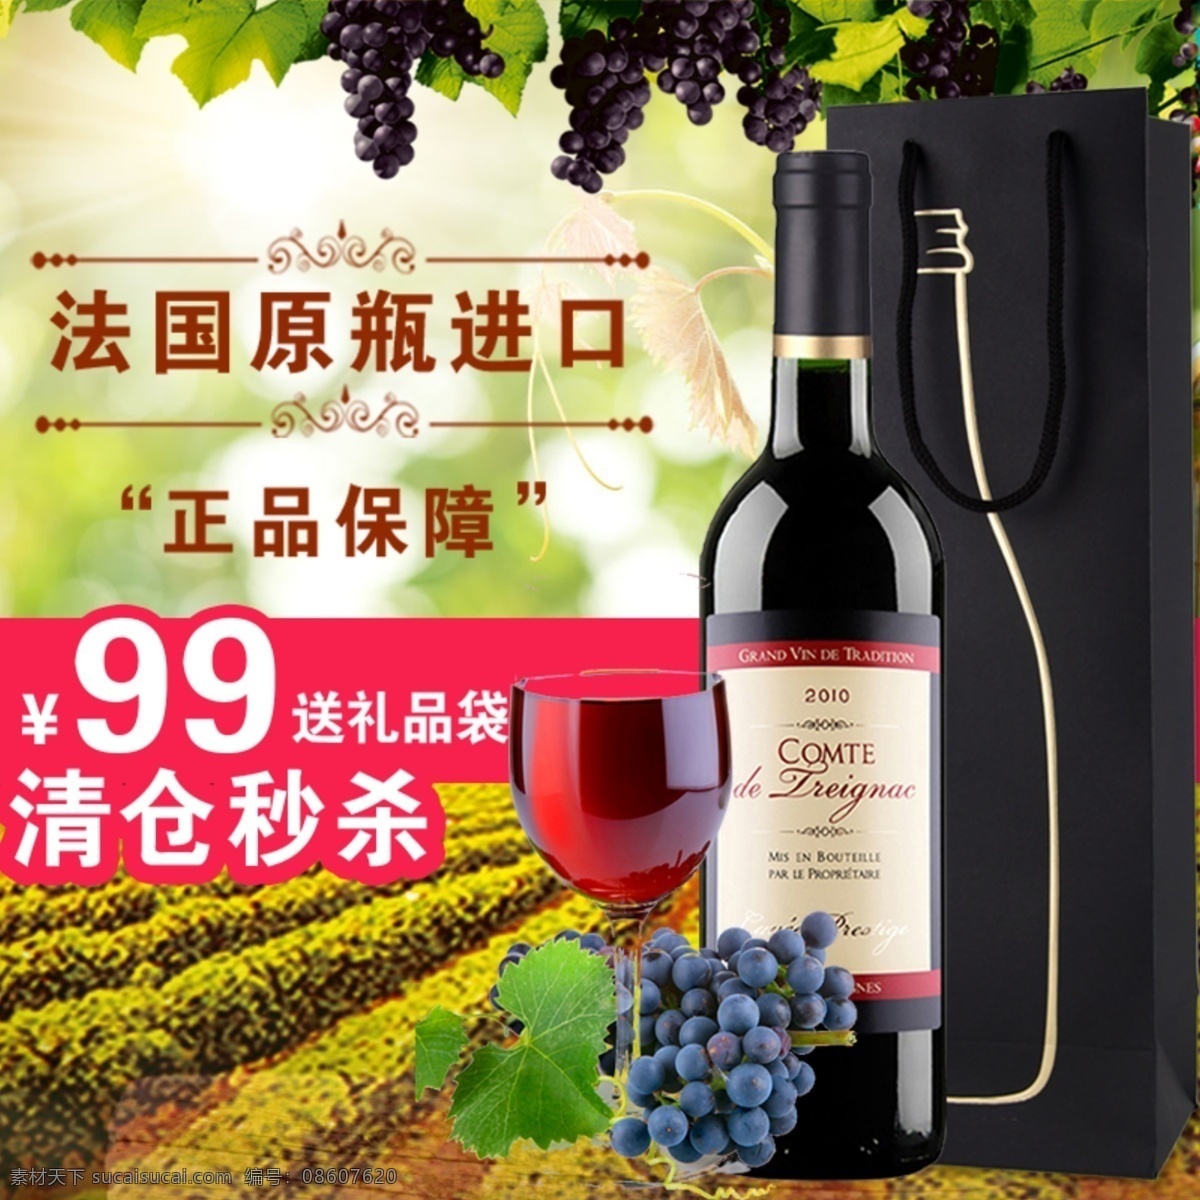 红酒宣传图 红酒网页小图 葡萄酒图片 葡萄 葡萄酒 分层